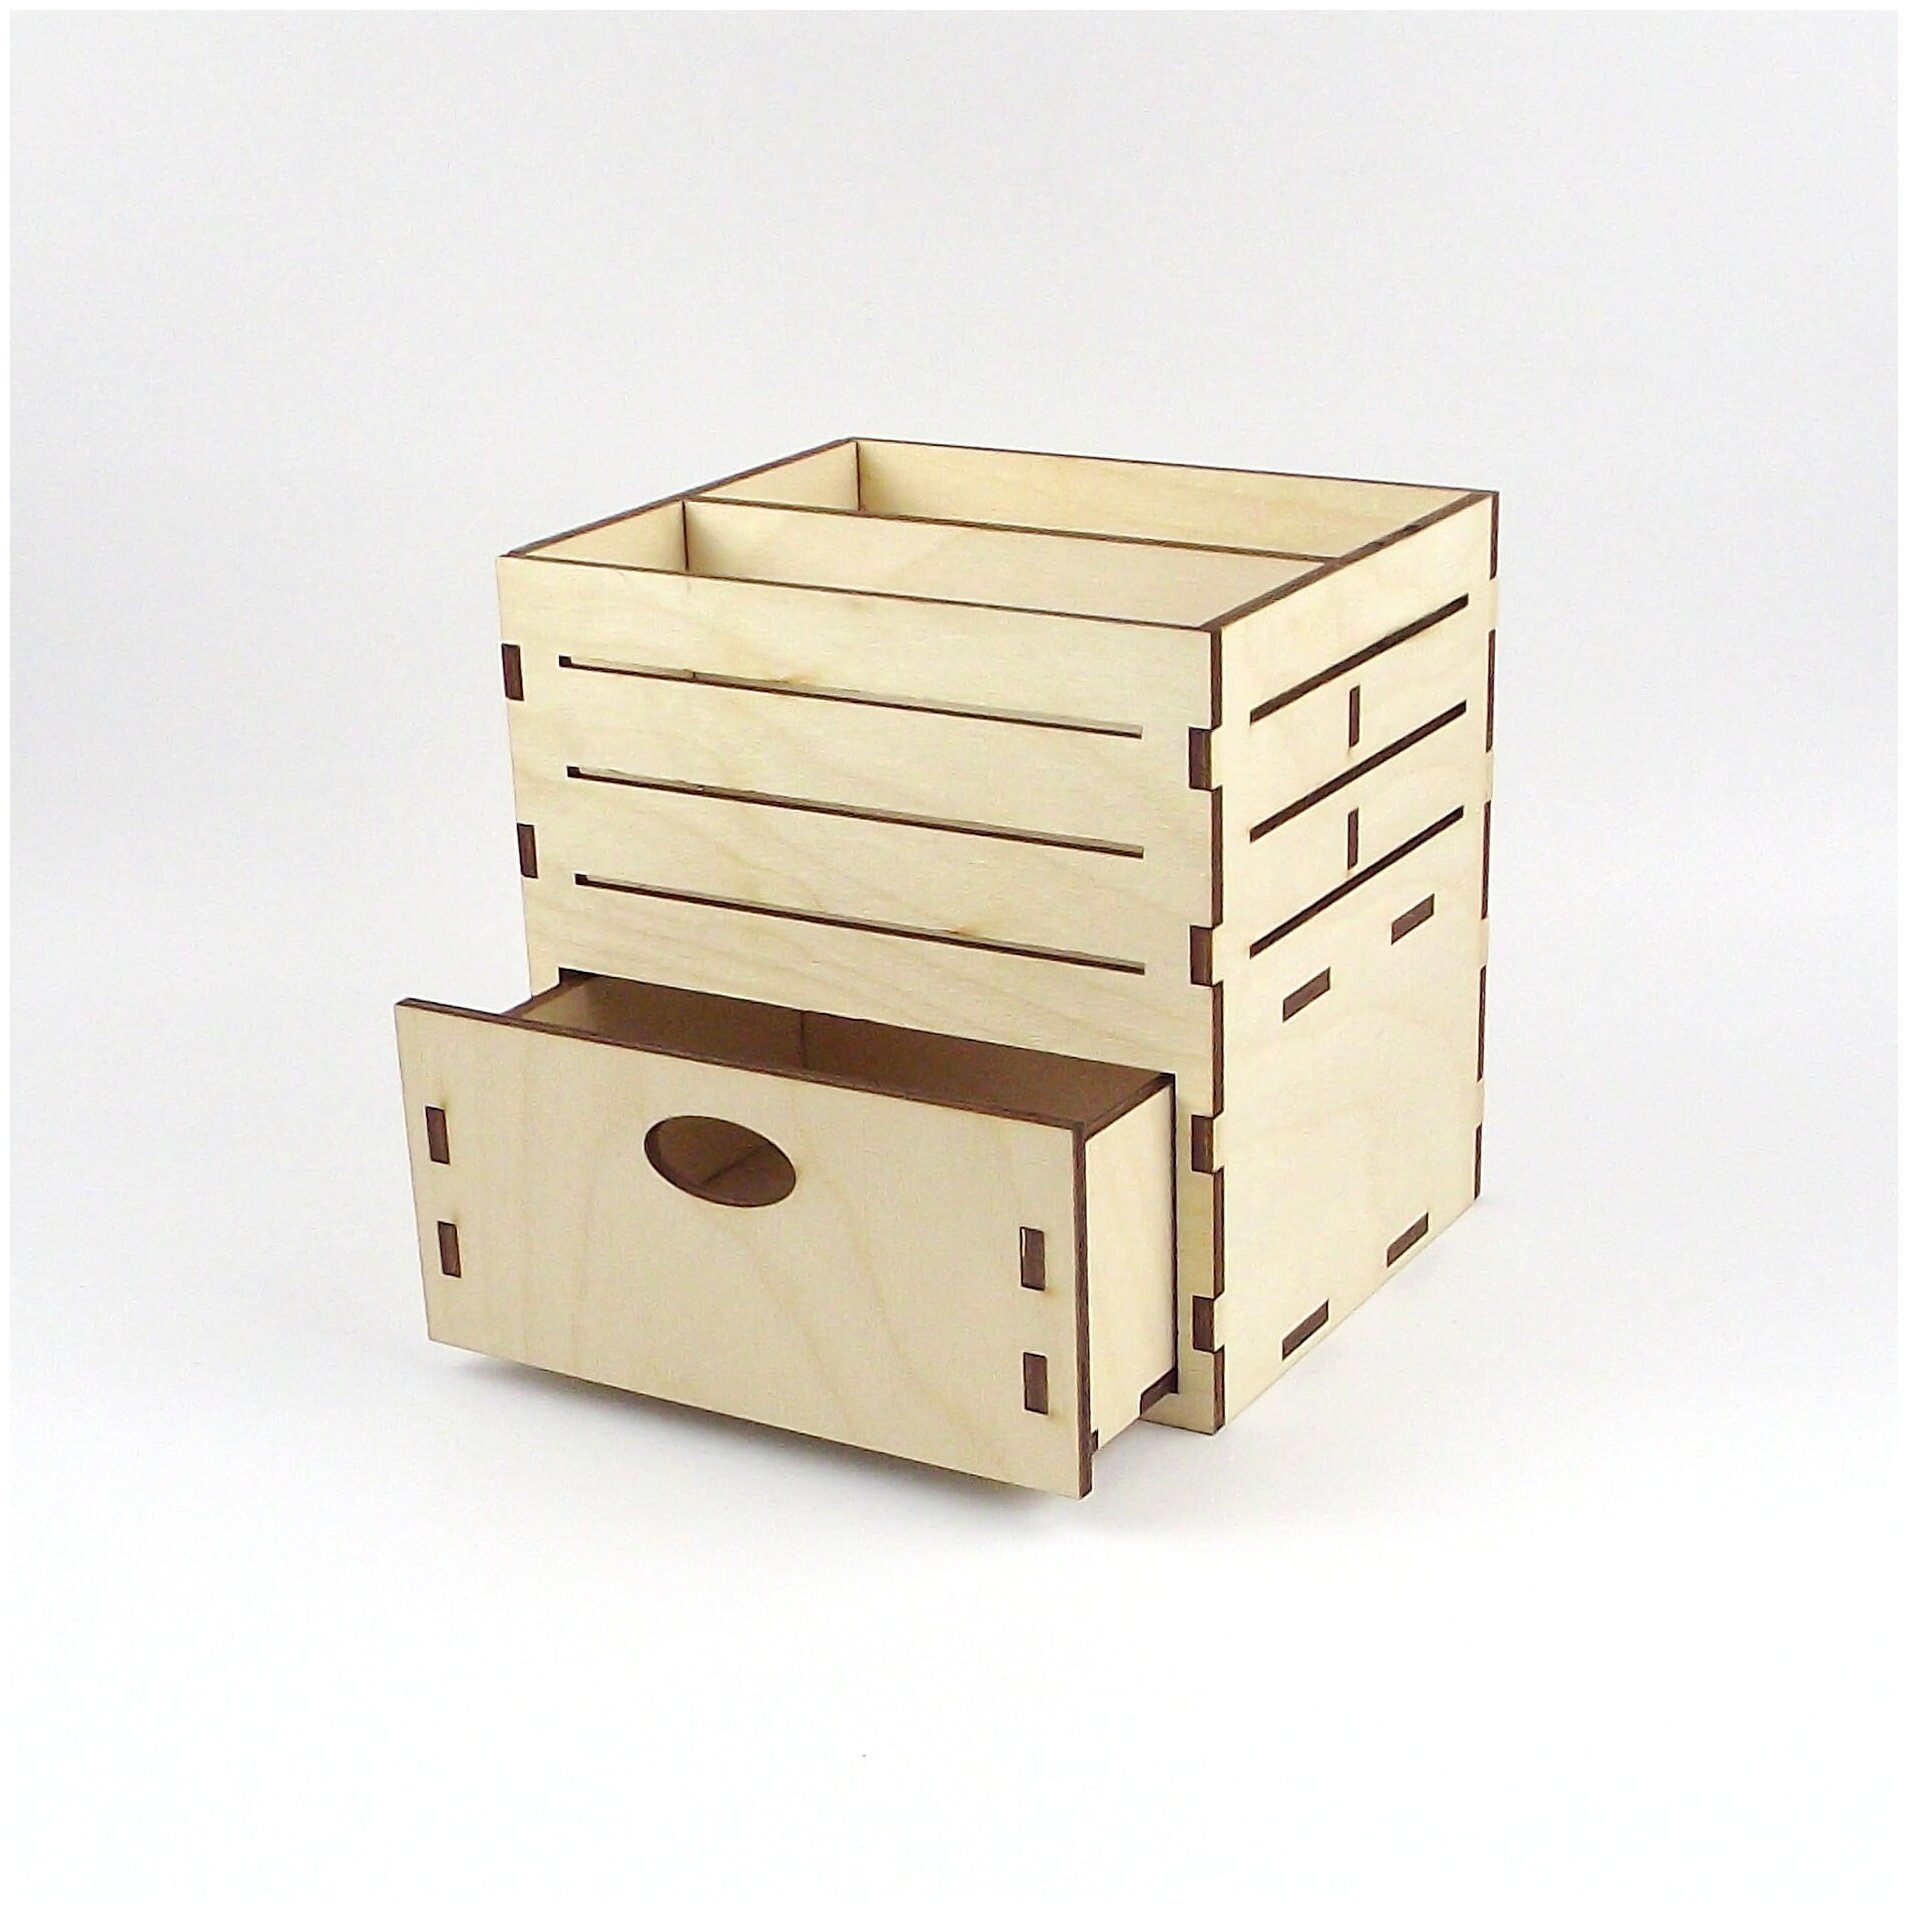 Салфетница с ящиком PlainBox, деревянная заготовка для творчества и декорирования